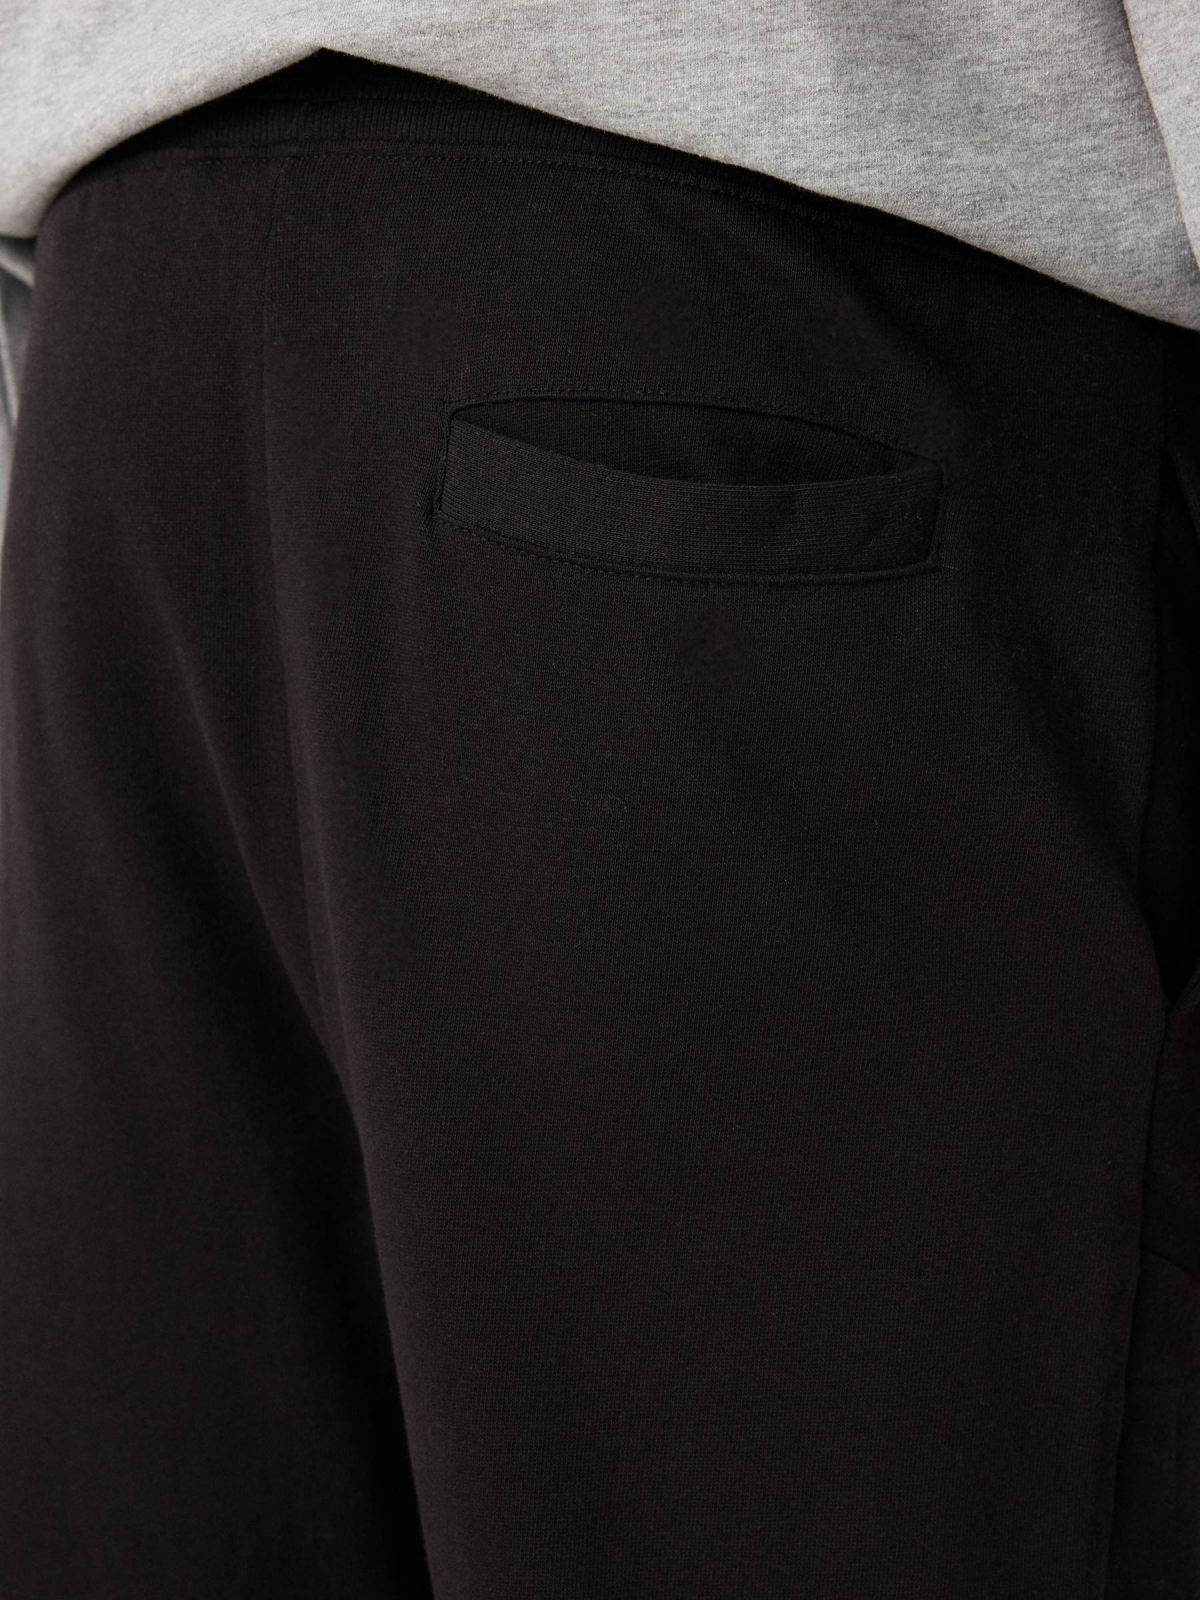 Jogger pants black detail view